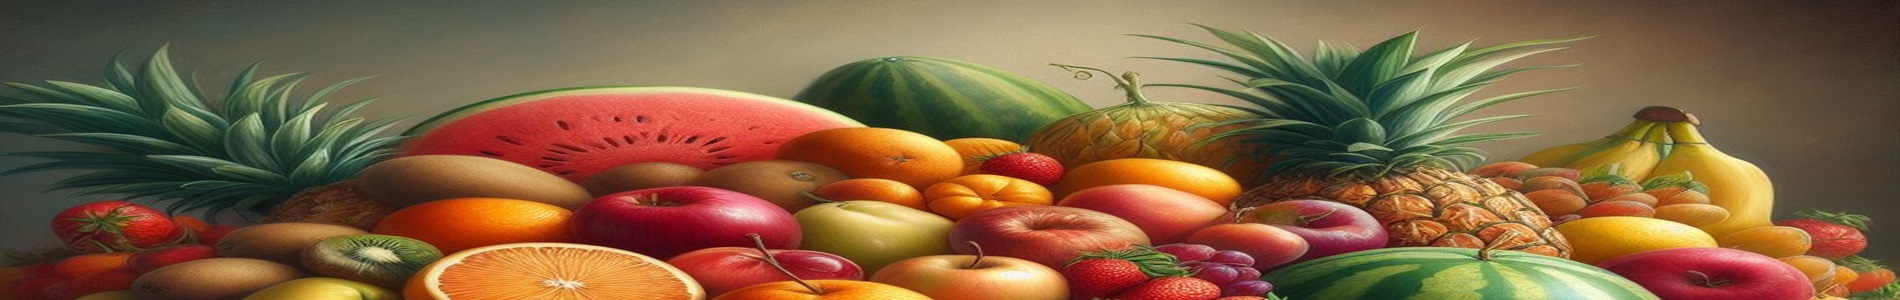 Identificando y Aprendiendo sobre Frutas